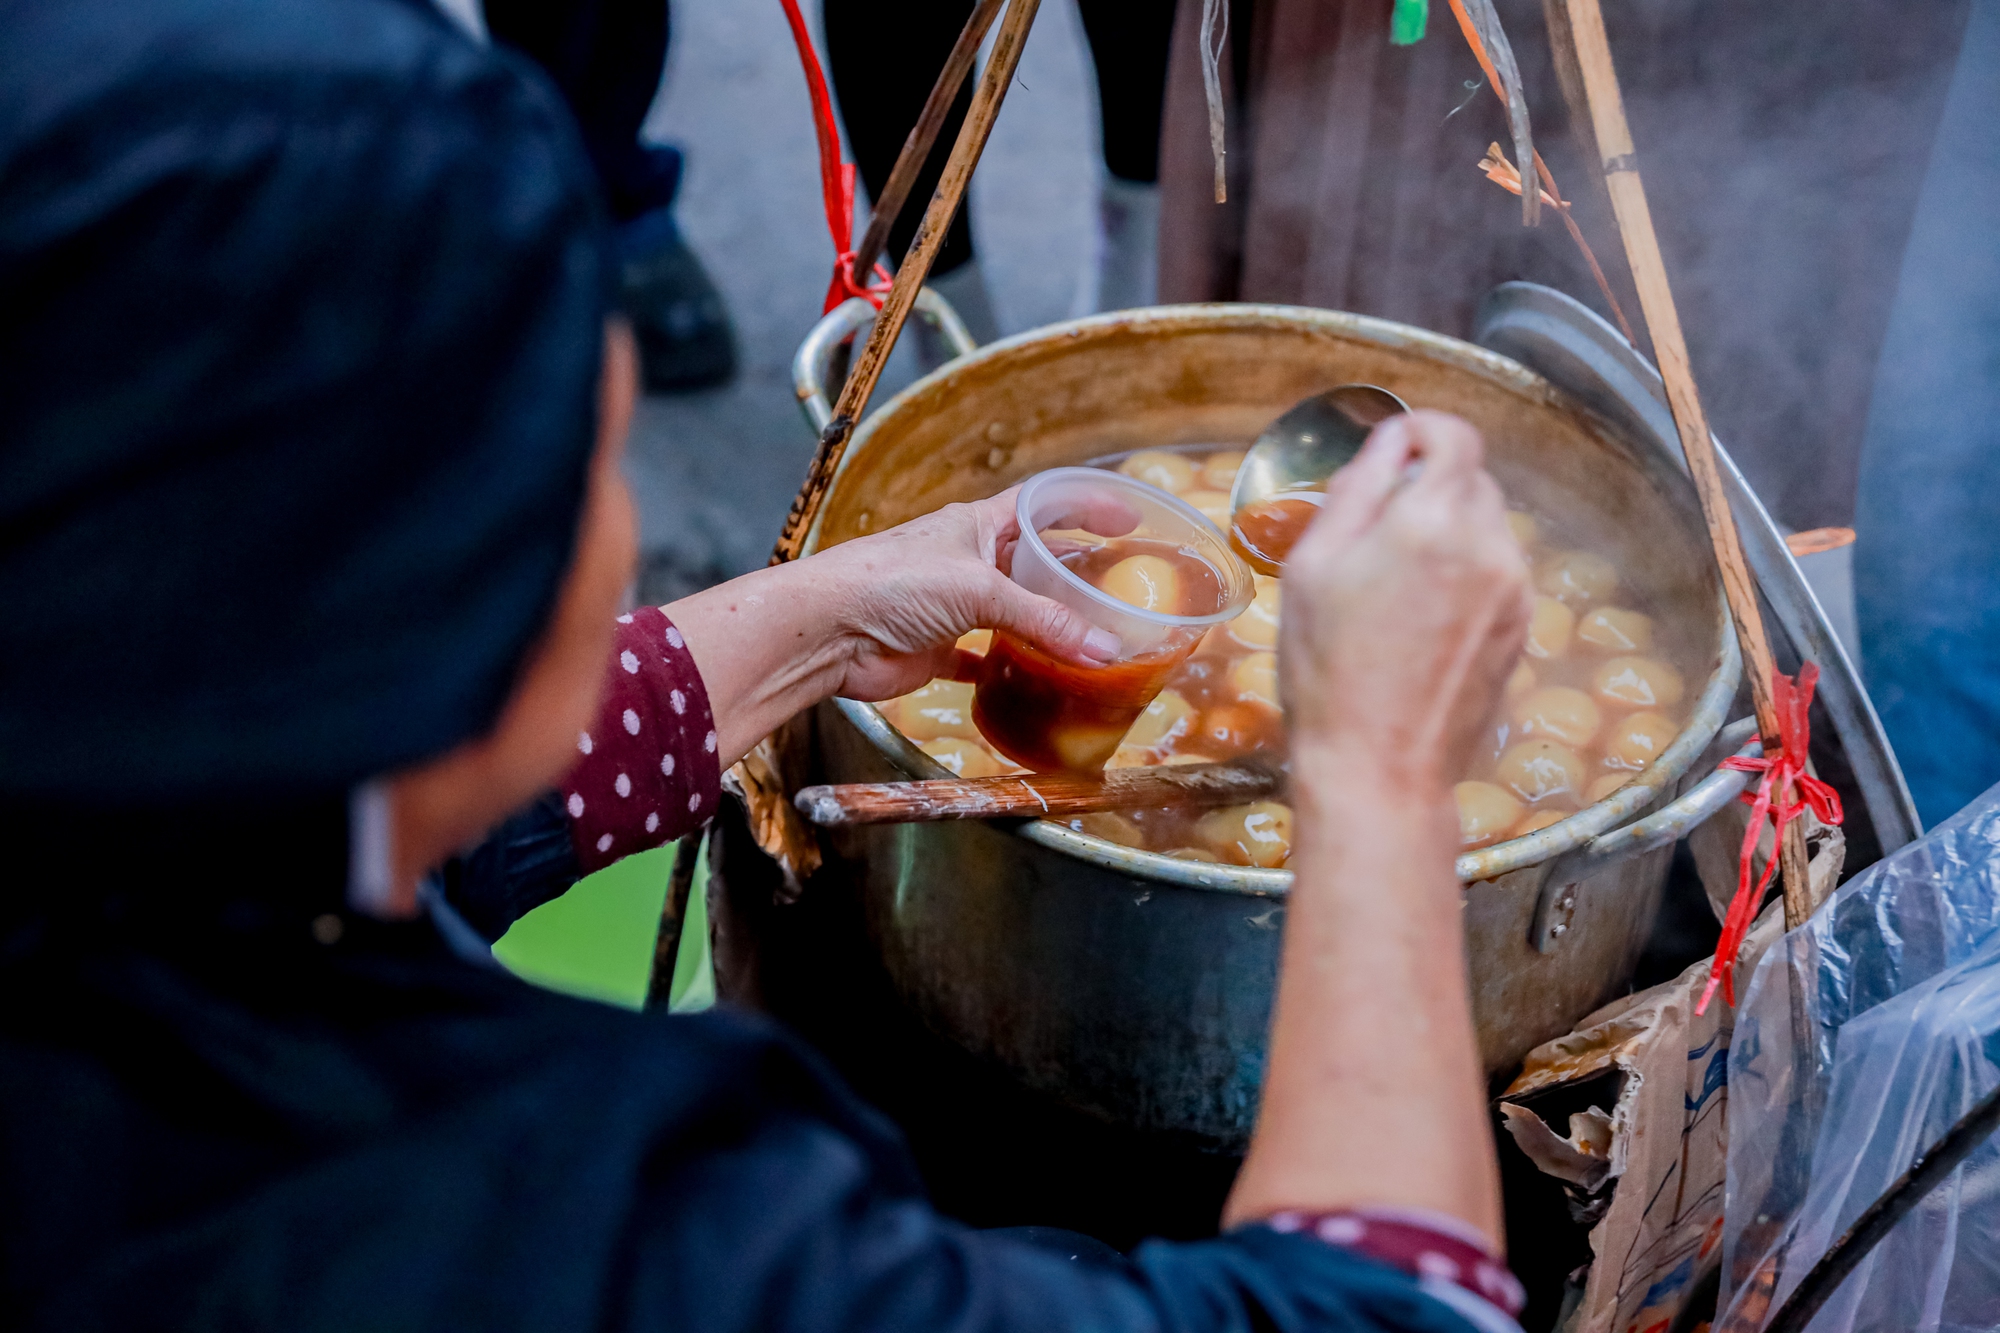 Quán bánh trôi tàu gần 30 năm ở Hà Nội gìn giữ hương vị truyền thống - Ảnh 7.